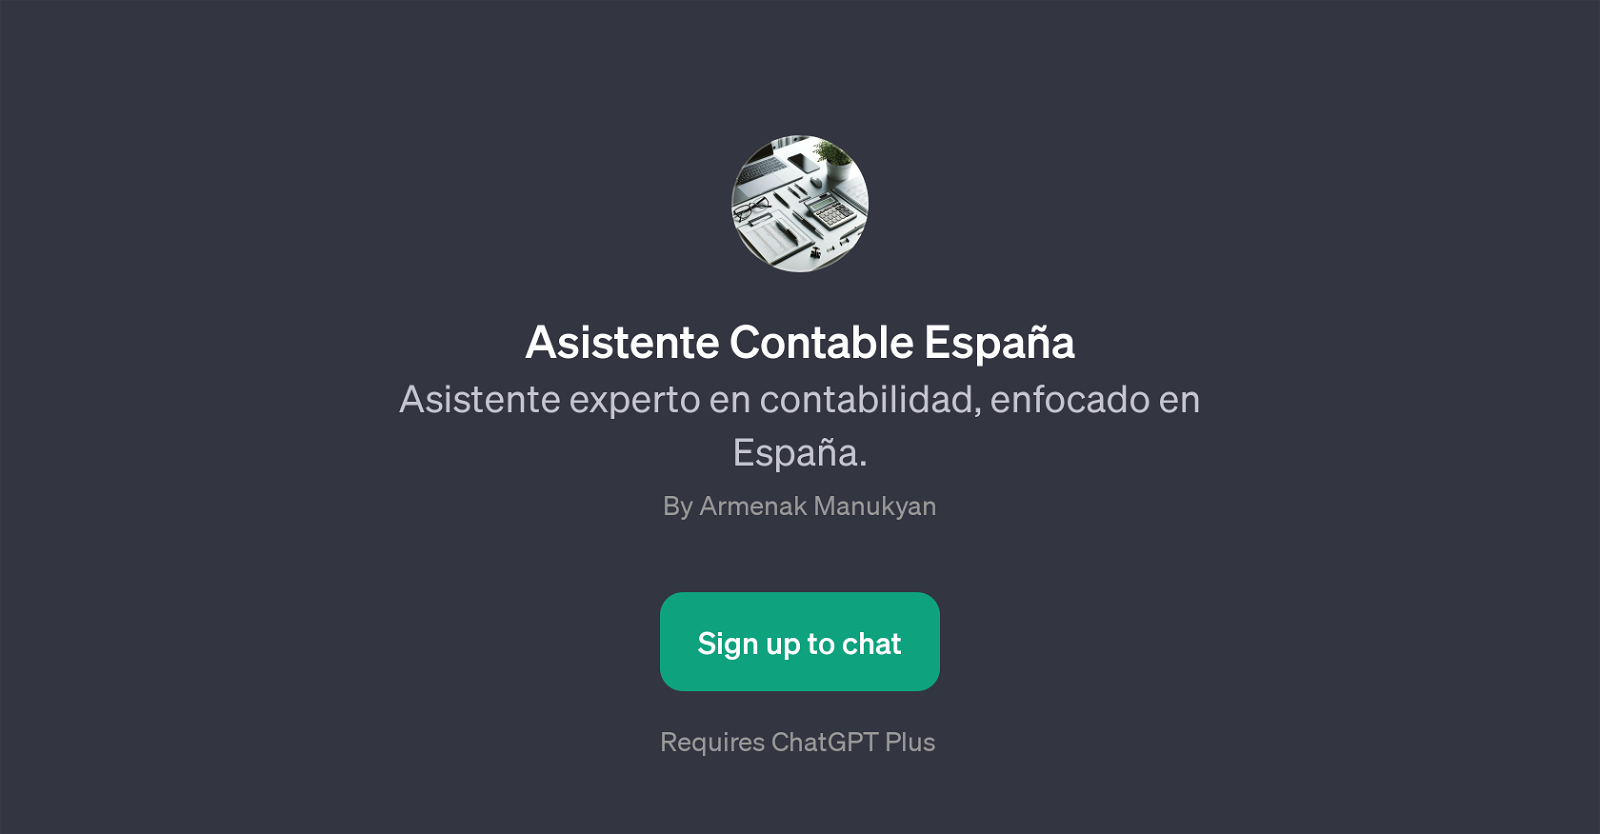 Asistente Contable Espaa website